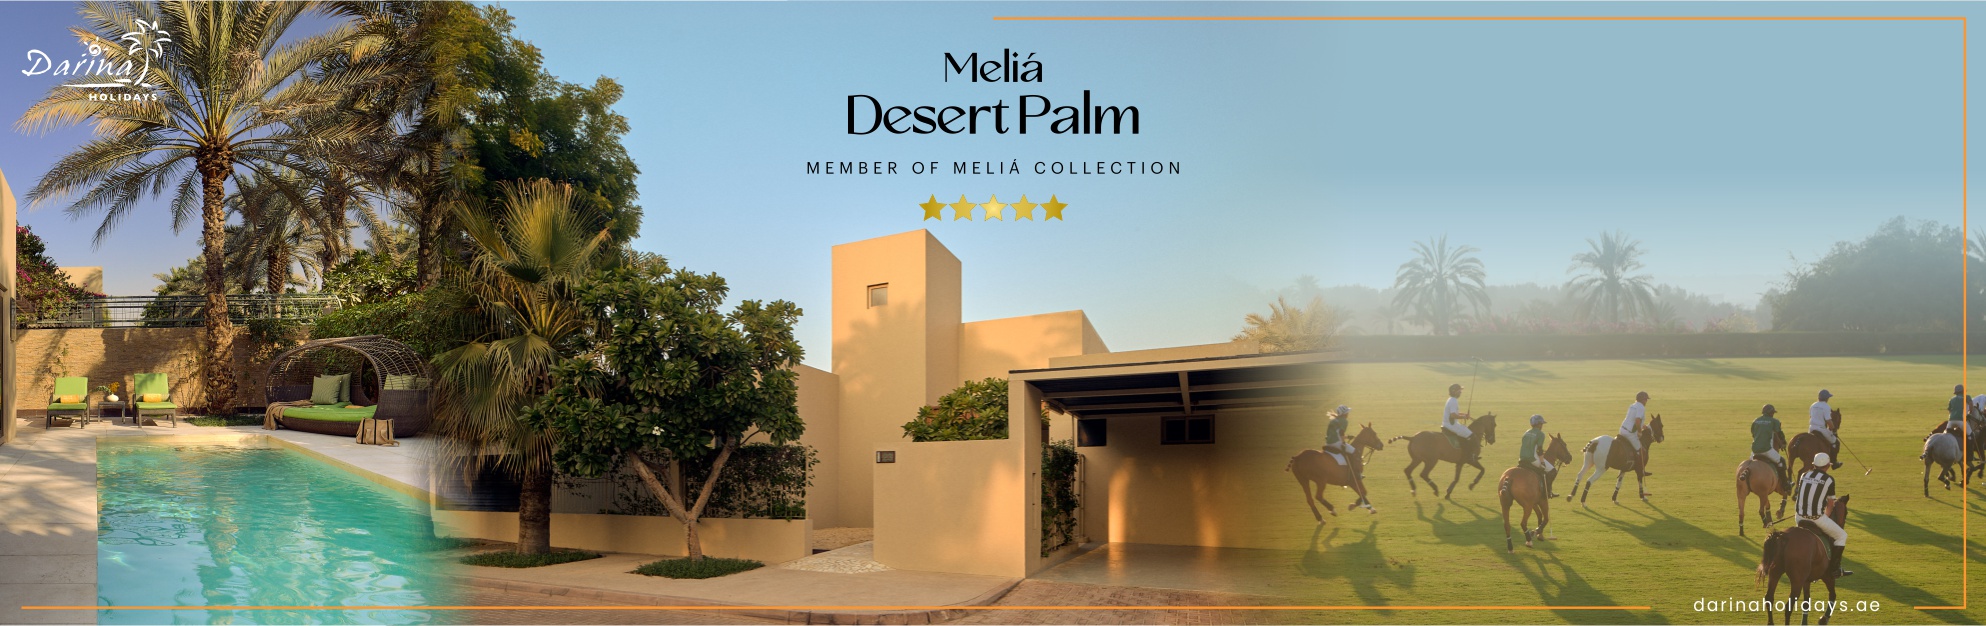 Meliá Desert Palm